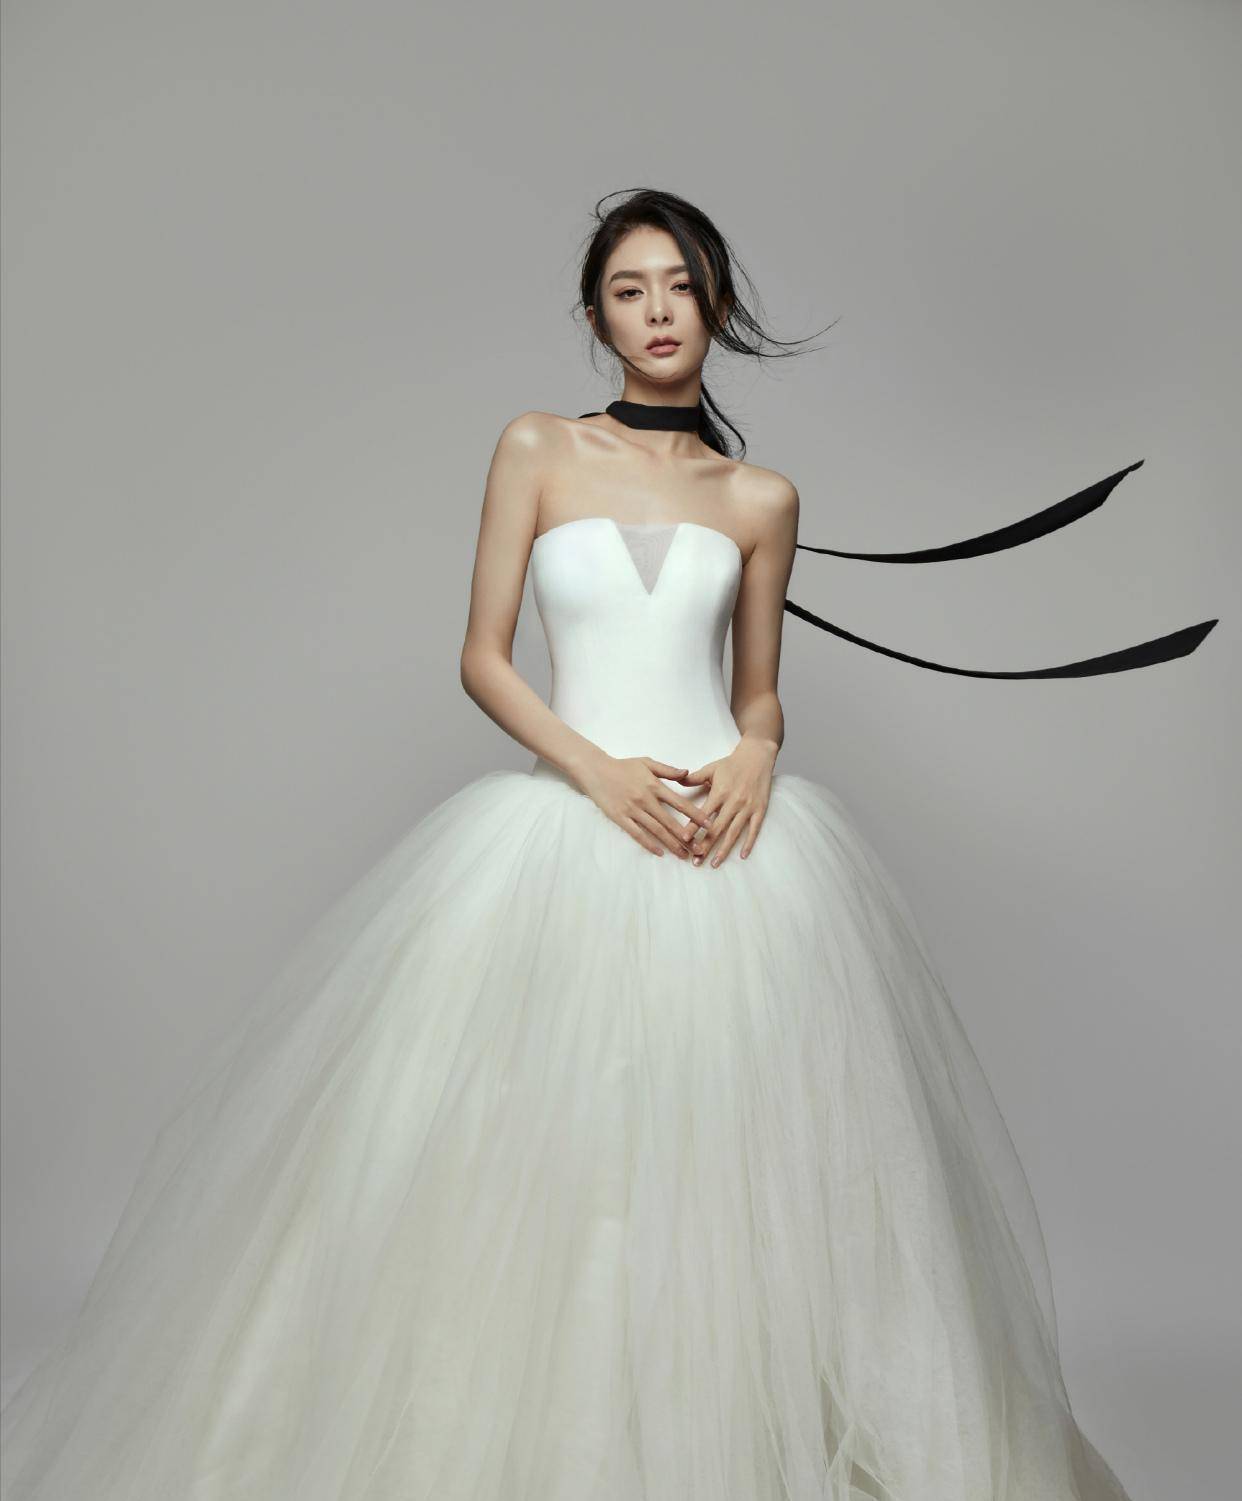 婚纱的设计_“婚纱女王”王薇薇:设计的婚纱最便宜一套,都能抵得上一辆名车